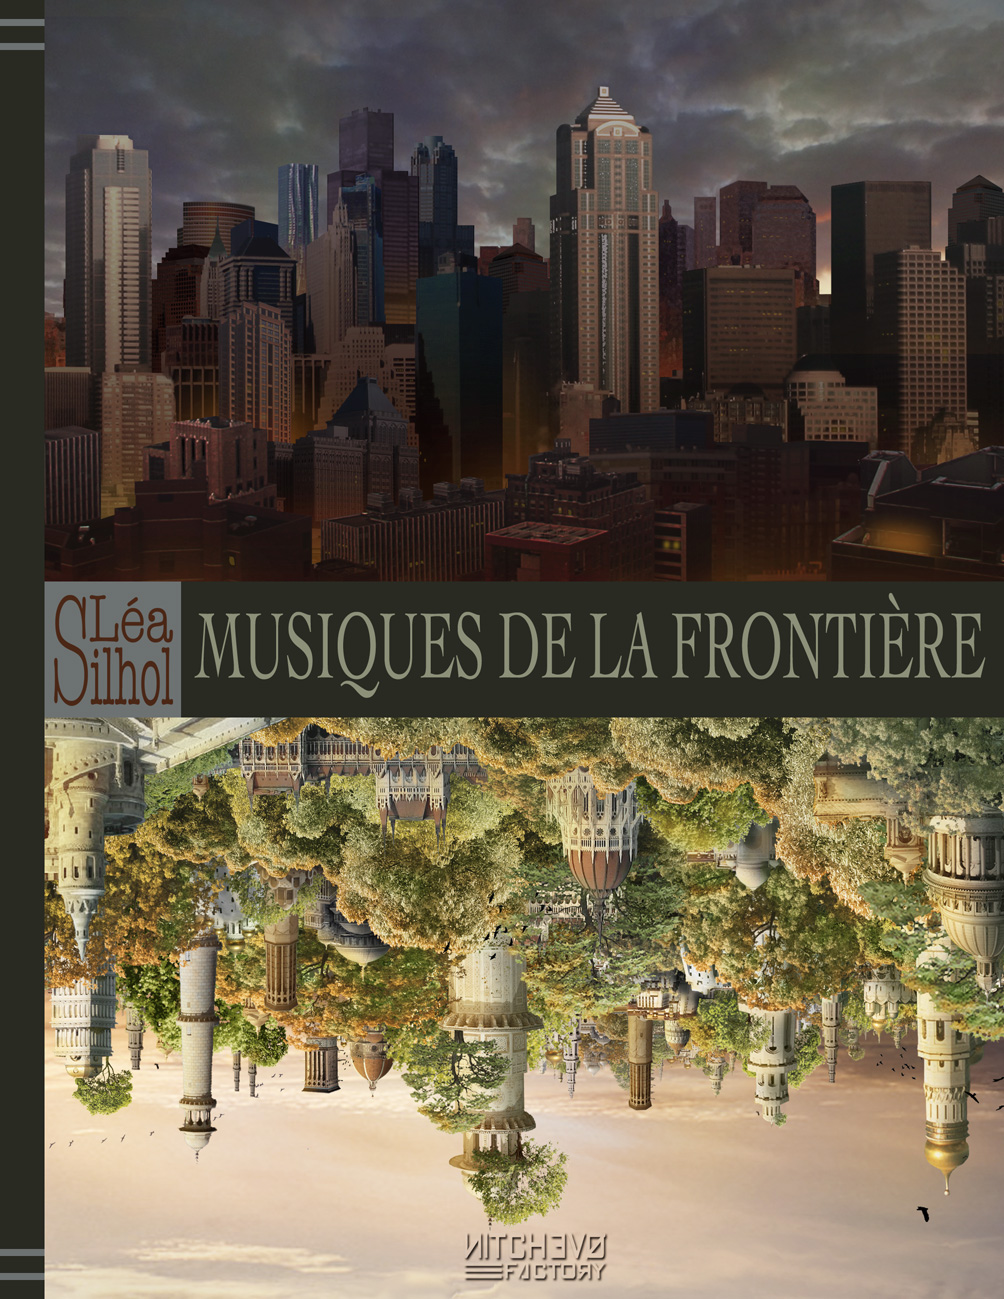 "Léa Silhol" "Musiques de la Frontière"